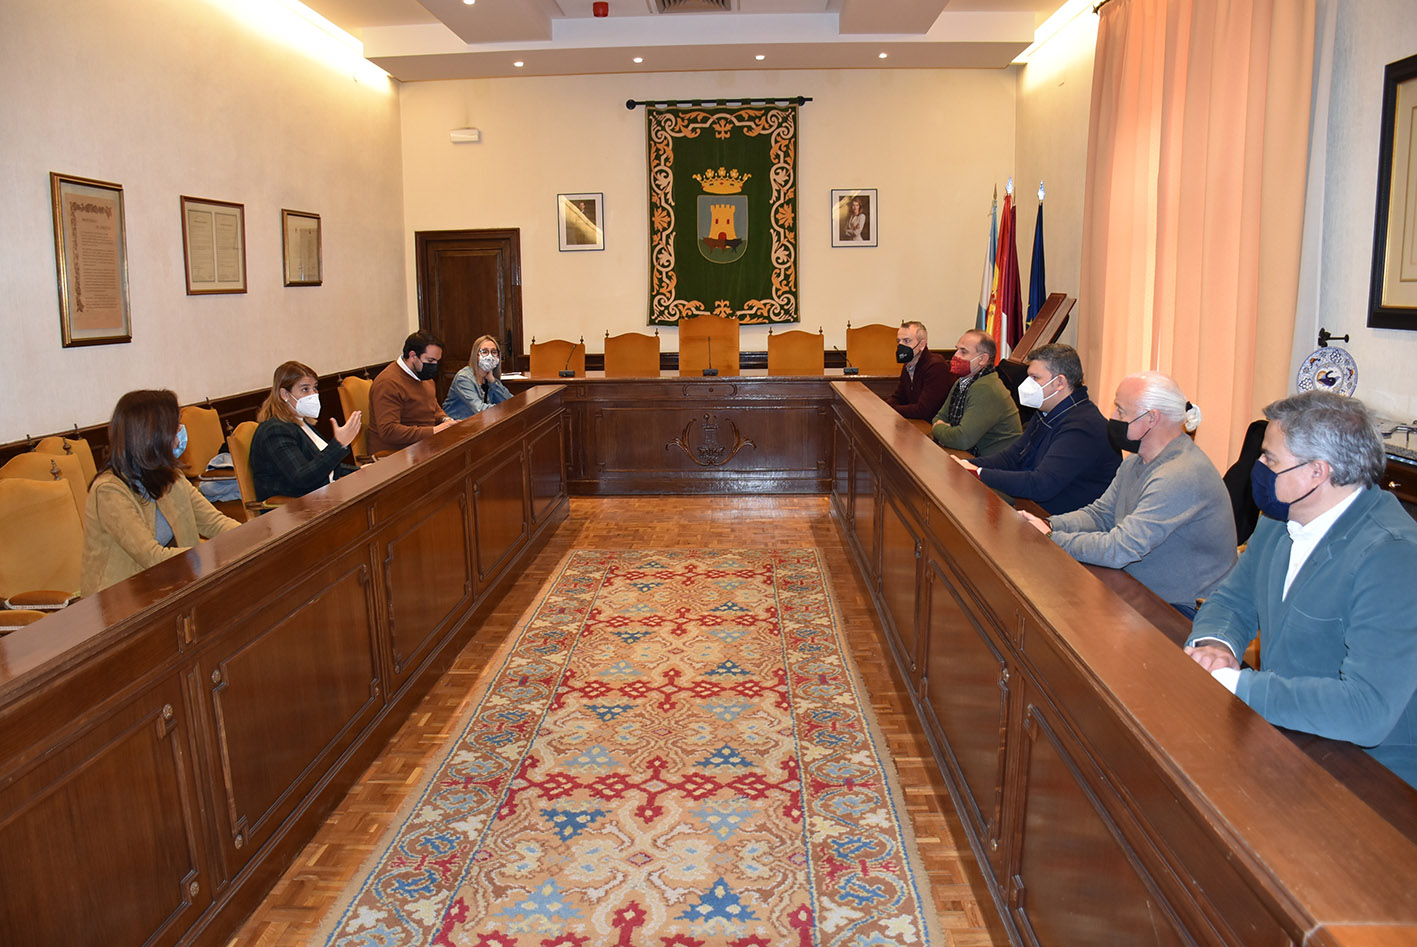 El Ayuntamiento de Talavera ha acogido la reunión entre los representantes del Pacto por el Ferrocarril.